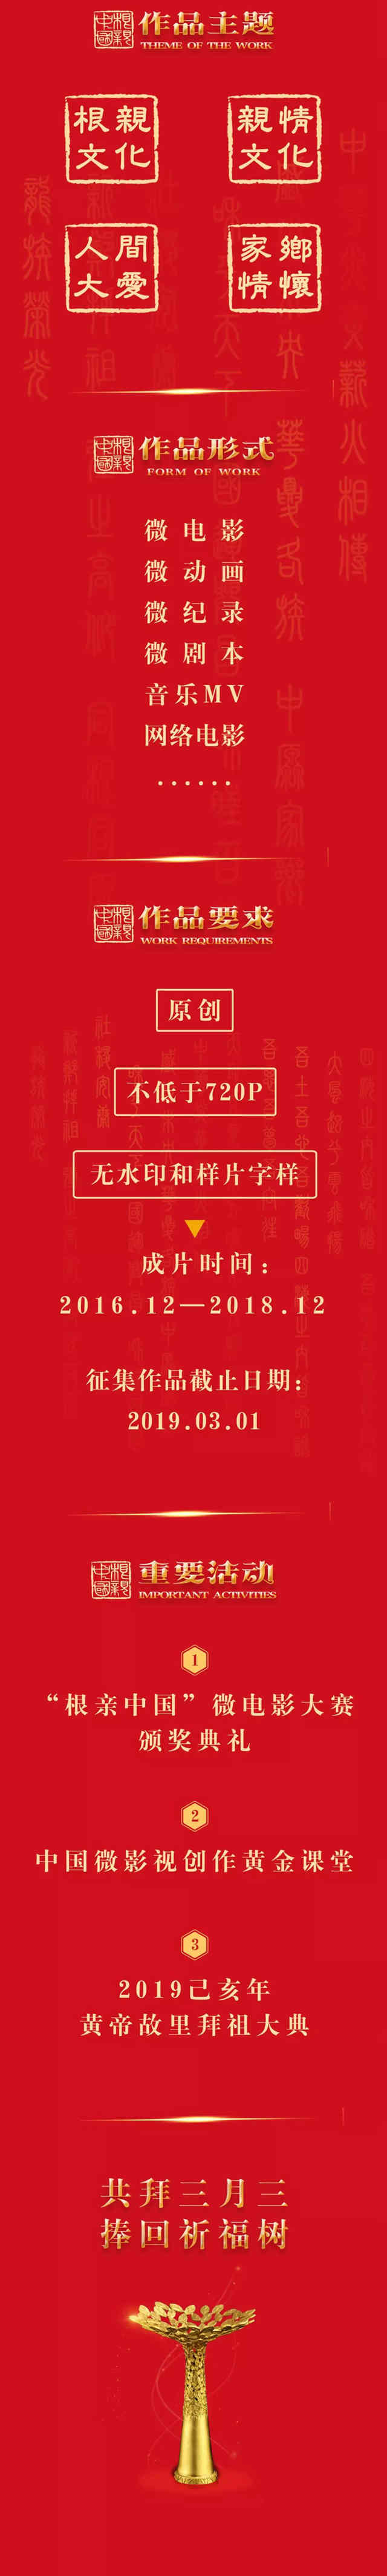 2019己亥年第五届“根亲中国”微电影大赛作品正在征集中